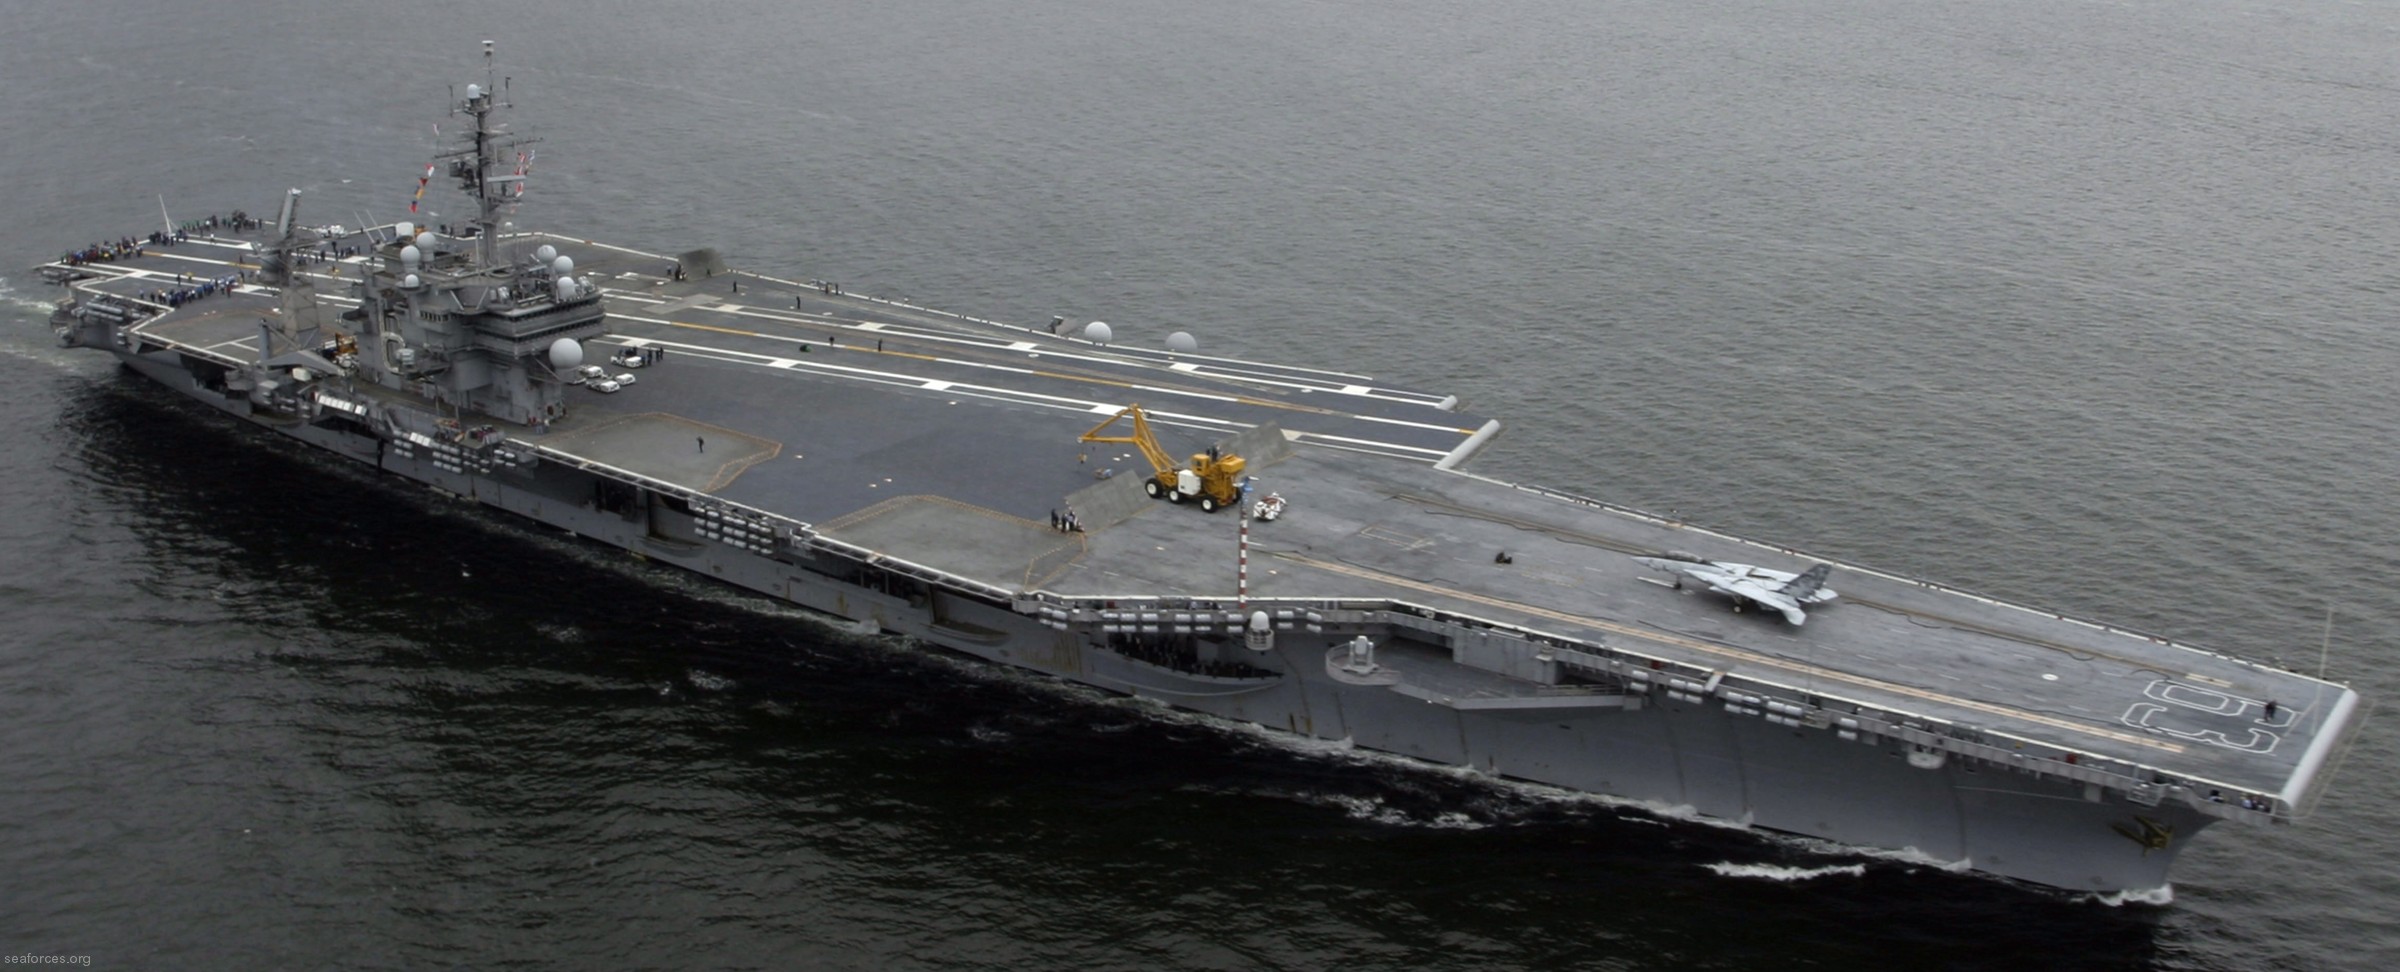 cv-63 uss kitty hawk aircraft carrier us navy 134